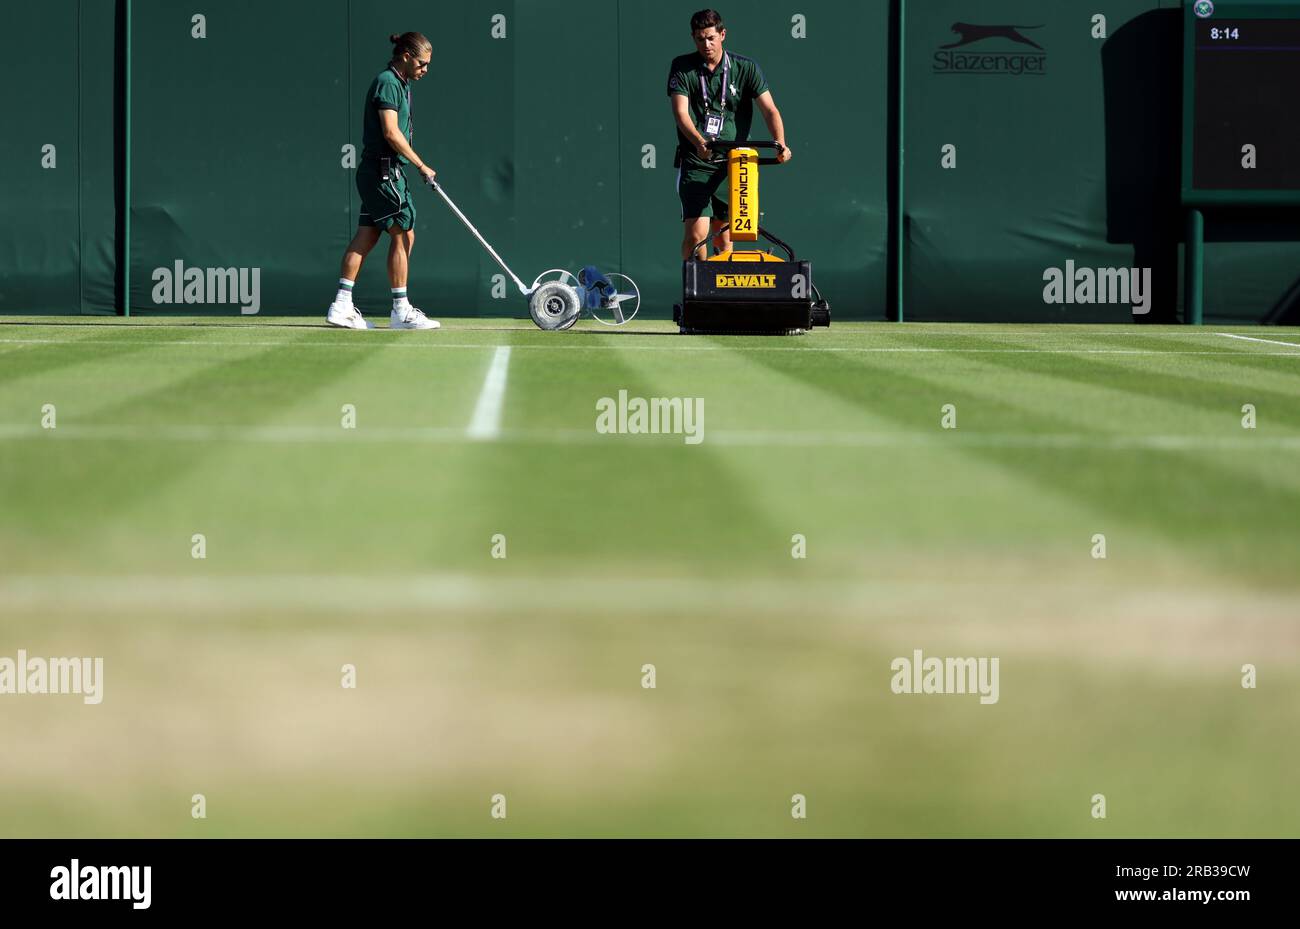 Le linee del campo sono dipinte il quinto giorno dei campionati di Wimbledon 2023 all'All England Lawn Tennis and Croquet Club di Wimbledon. Data immagine: Venerdì 7 luglio 2023. Foto Stock